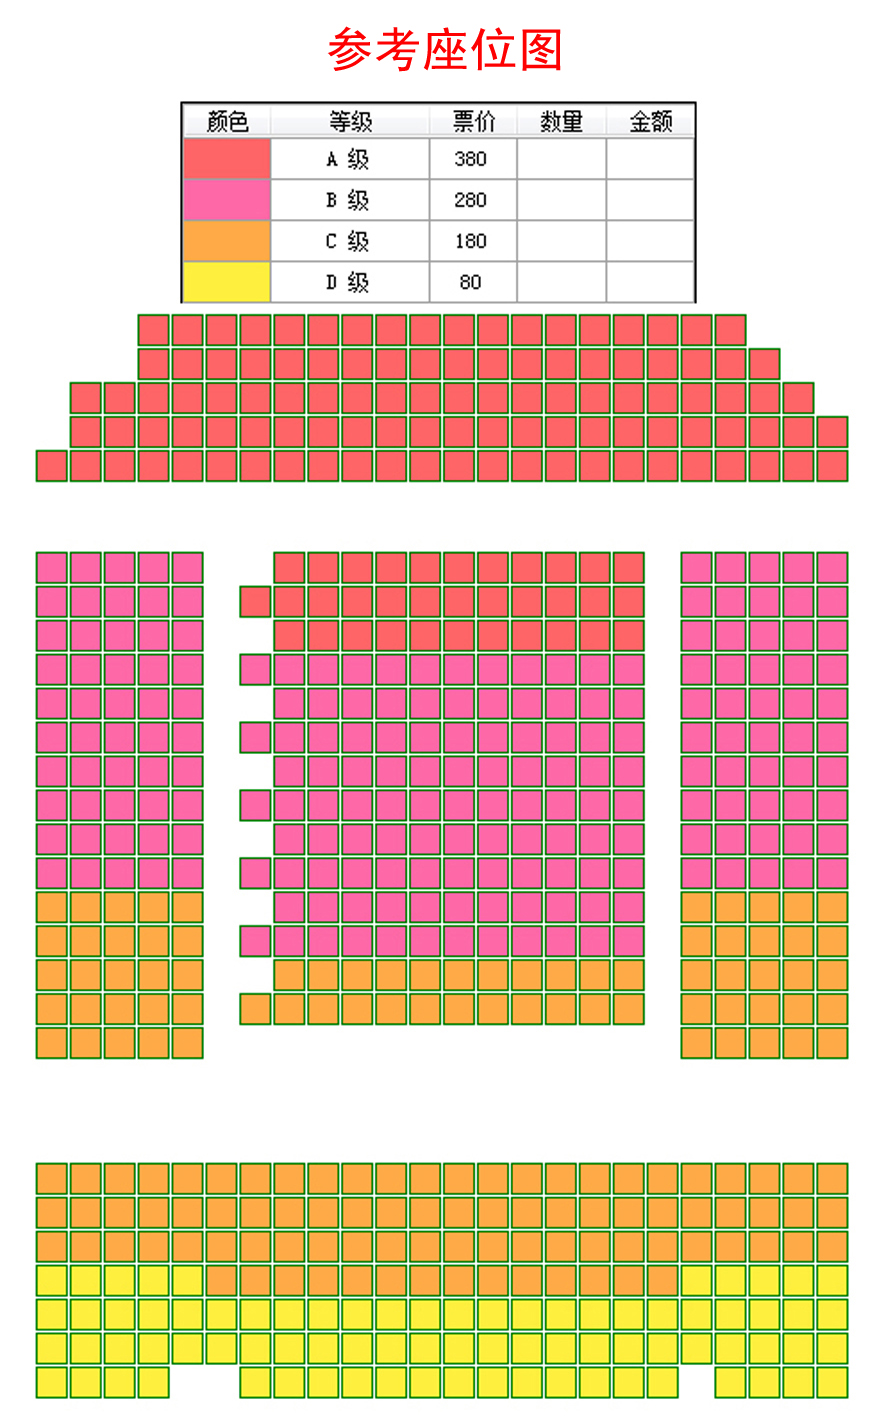 中国儿童中心剧院《新春音乐会》座位图